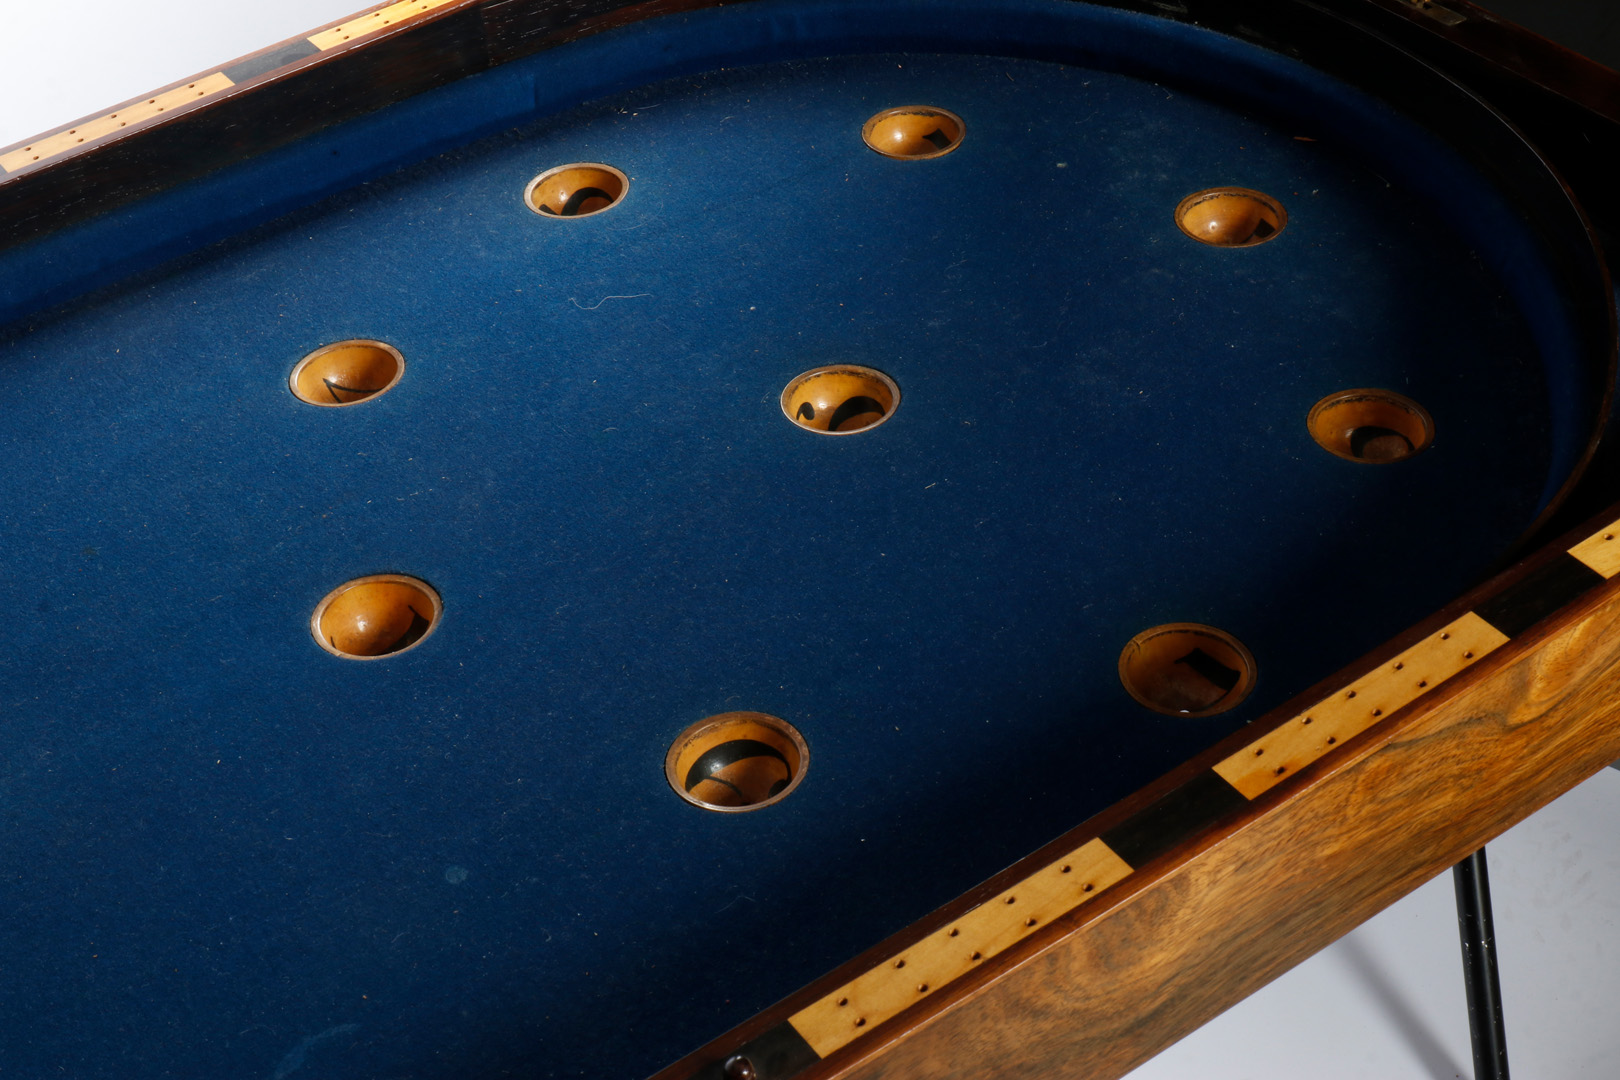 Schiebespiel Shuffle Board, eingebaut in Mahagoni-Holztisch, aufklappbar, mit blauem Filz bezogen, - Image 4 of 4